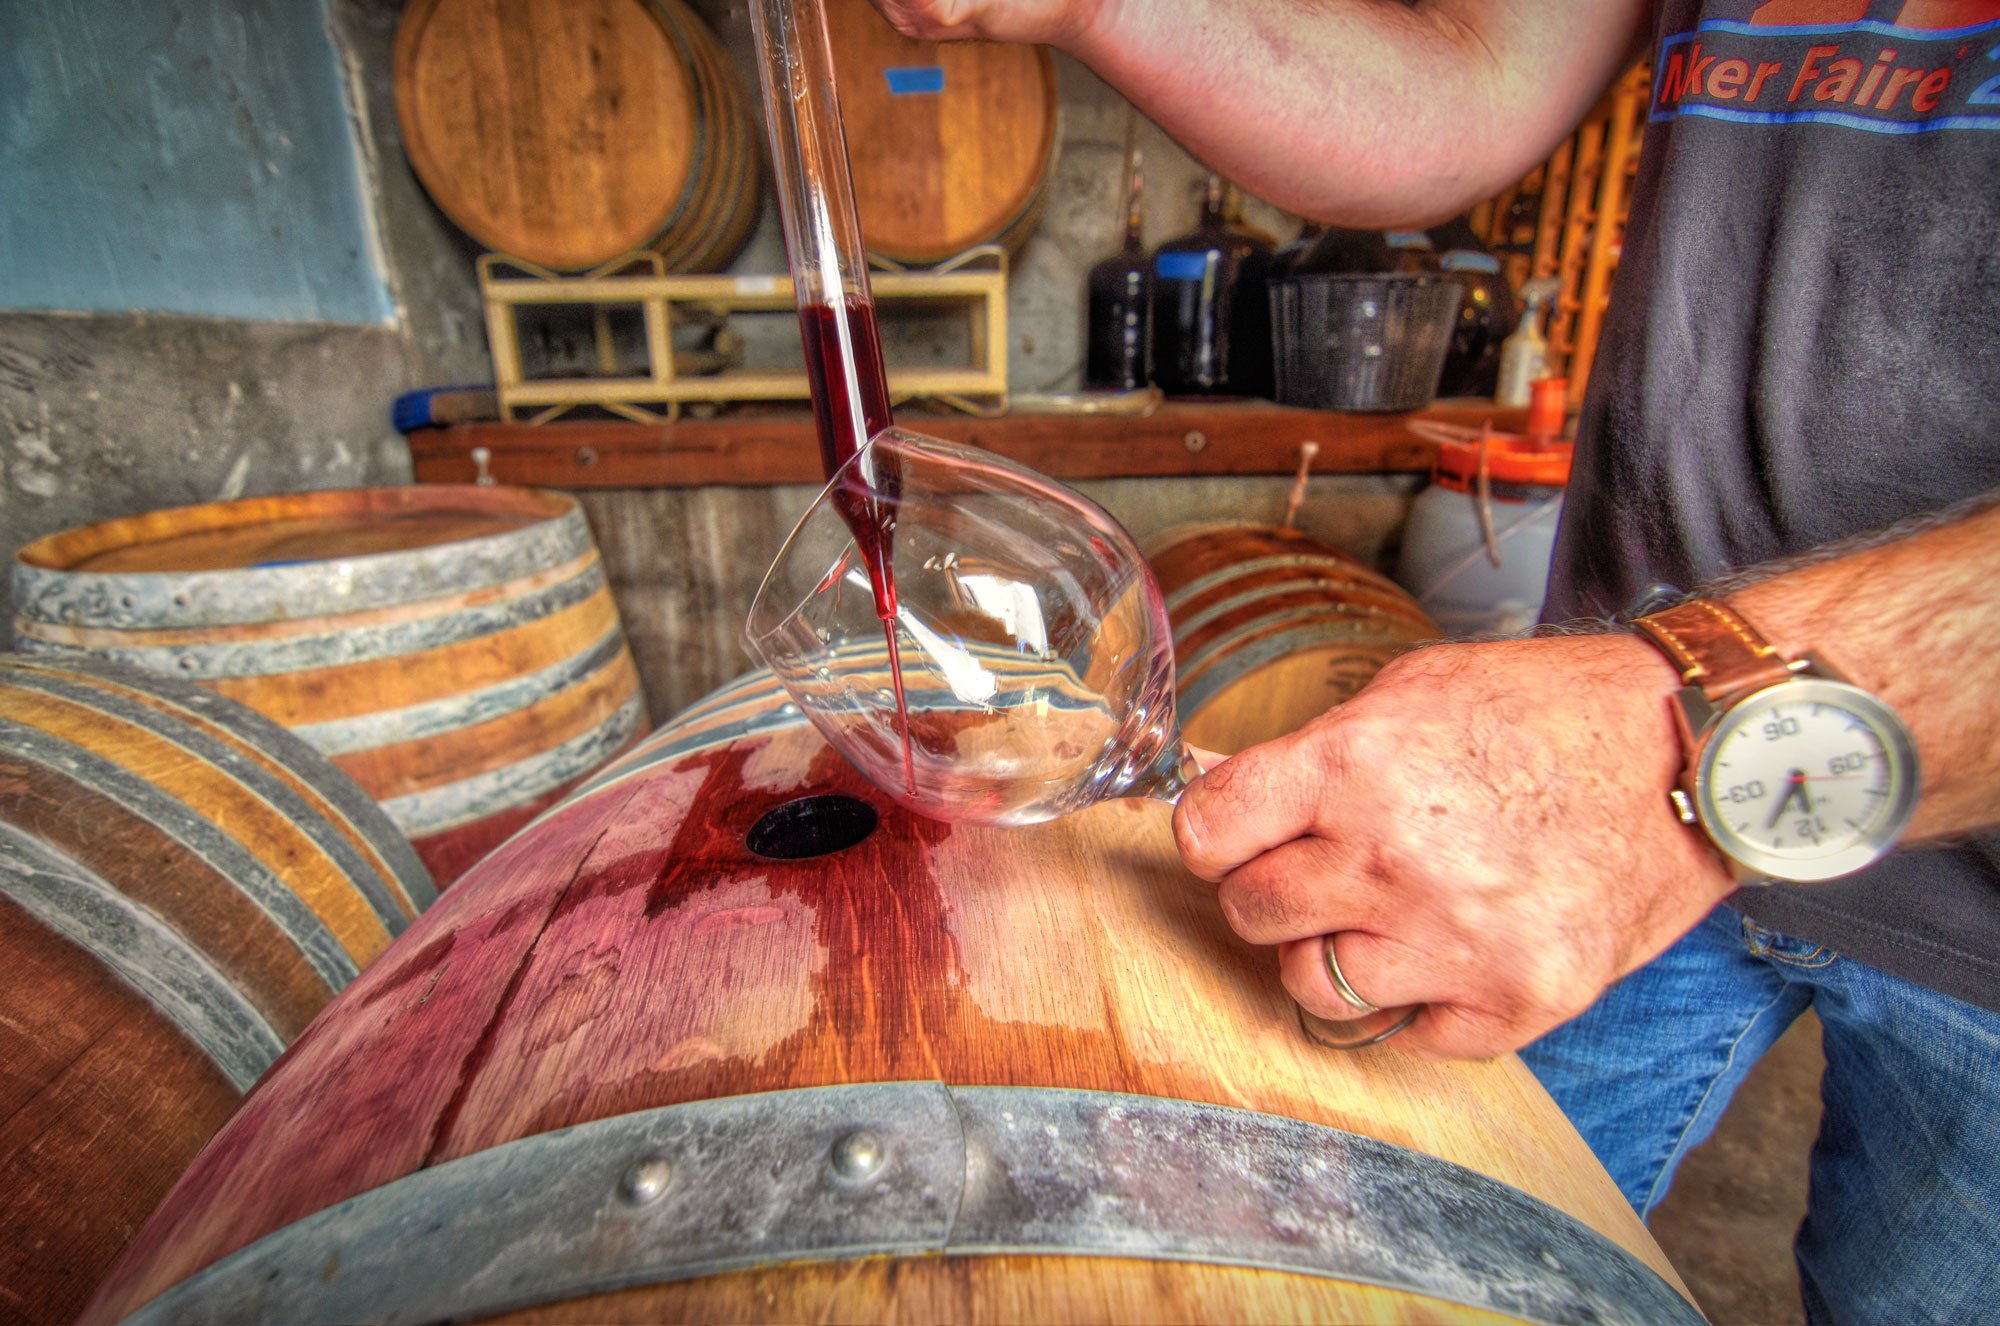 Pulling wine from barrel to taste it's progress